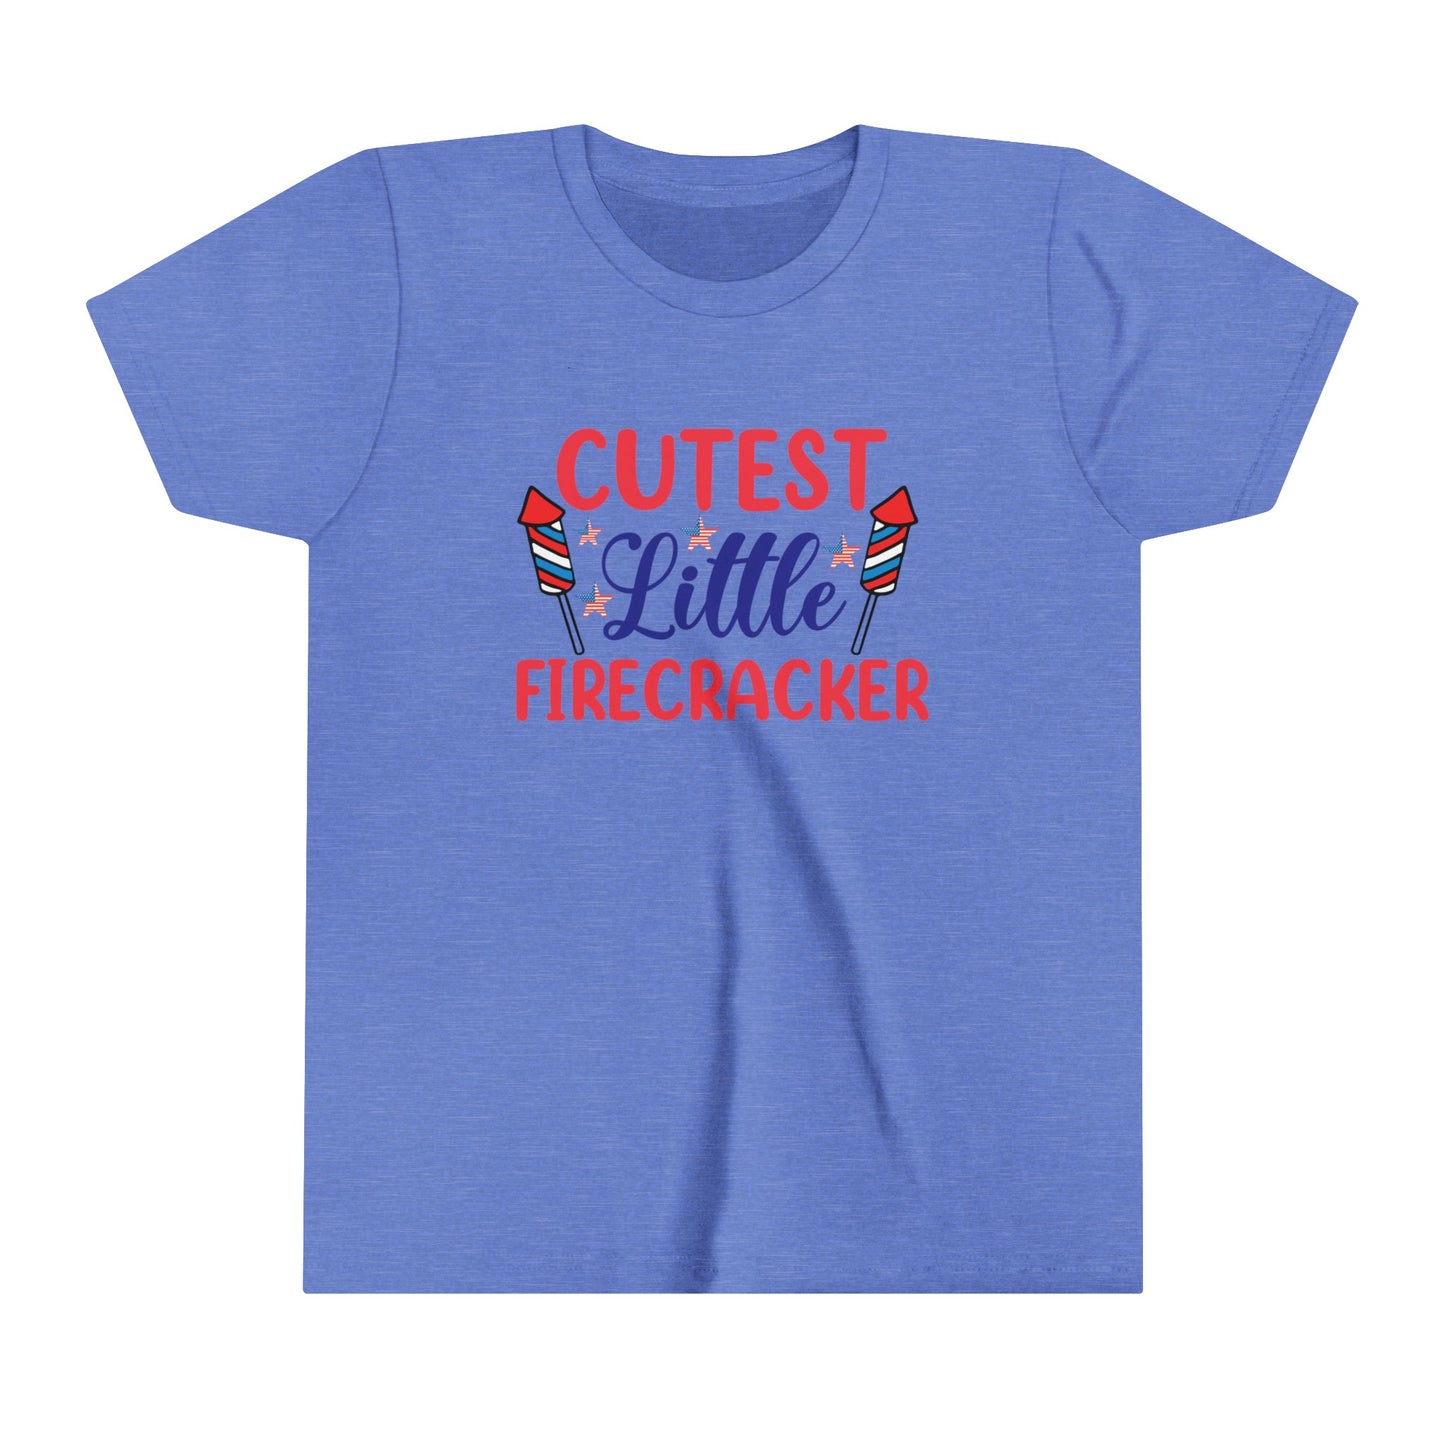 Cutest Little Firecracker 4th of July USA Youth Shirt